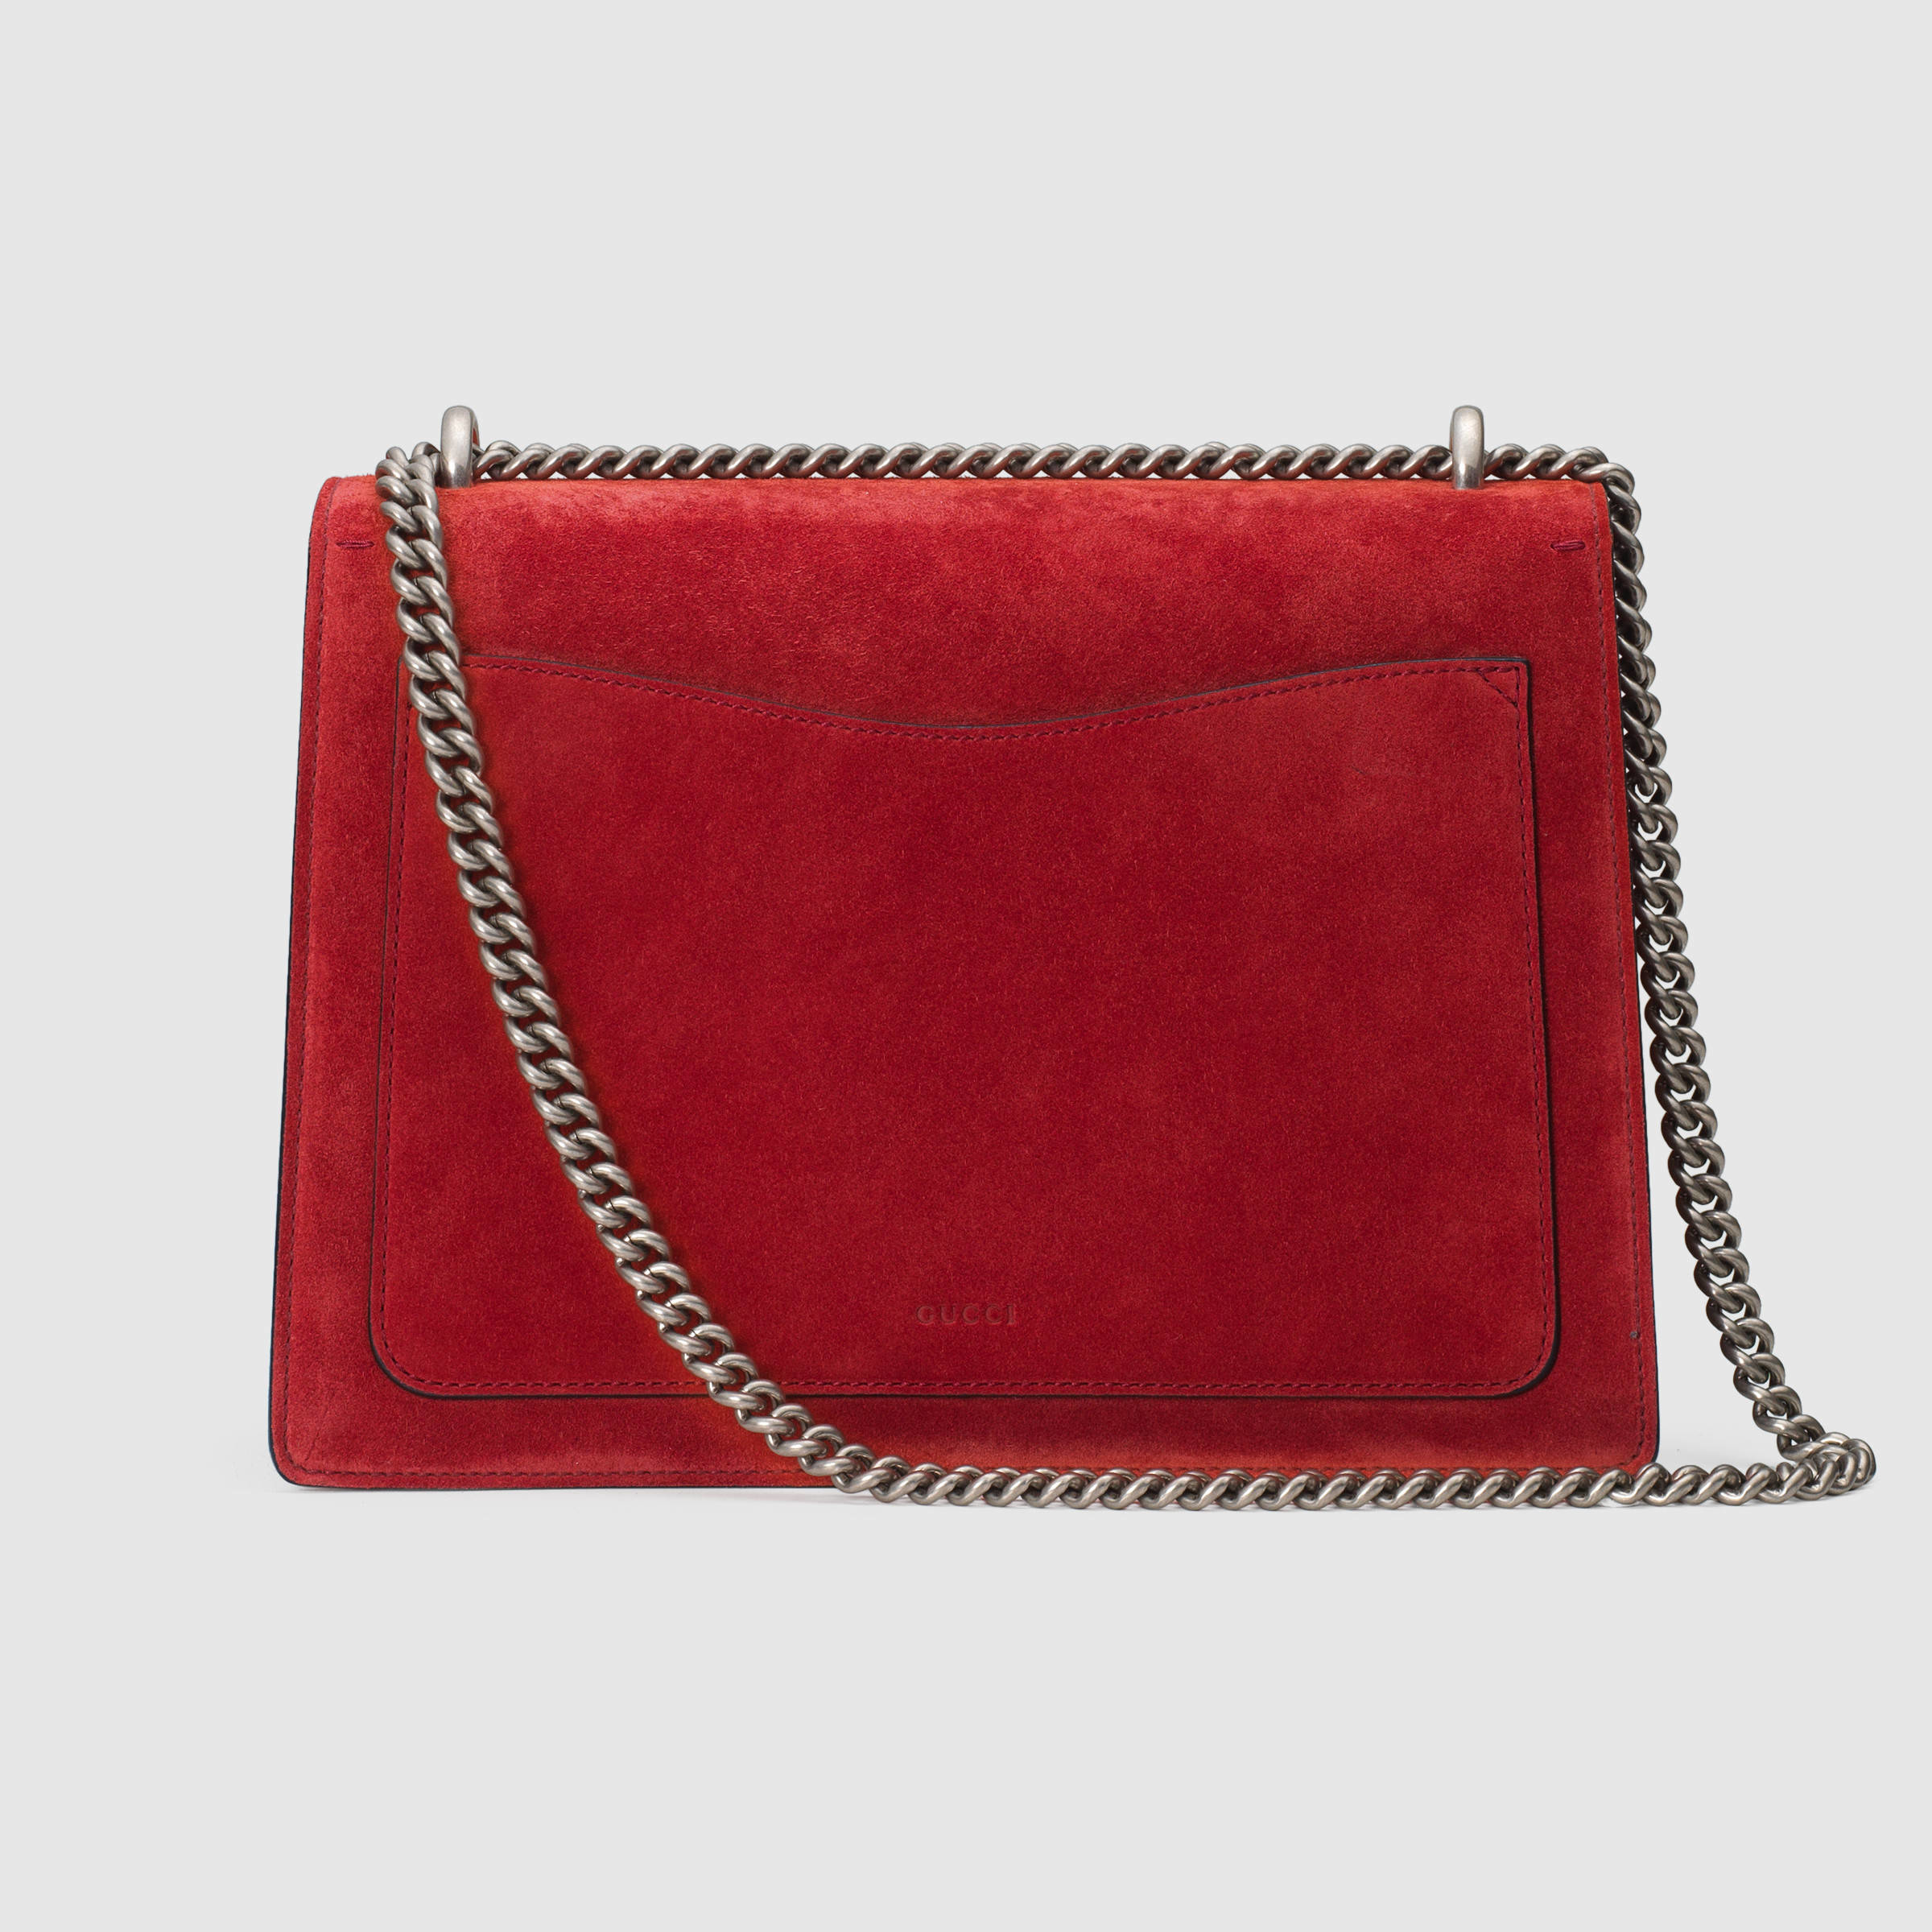 Dionysus Gucci Bag Red | NAR Media Kit